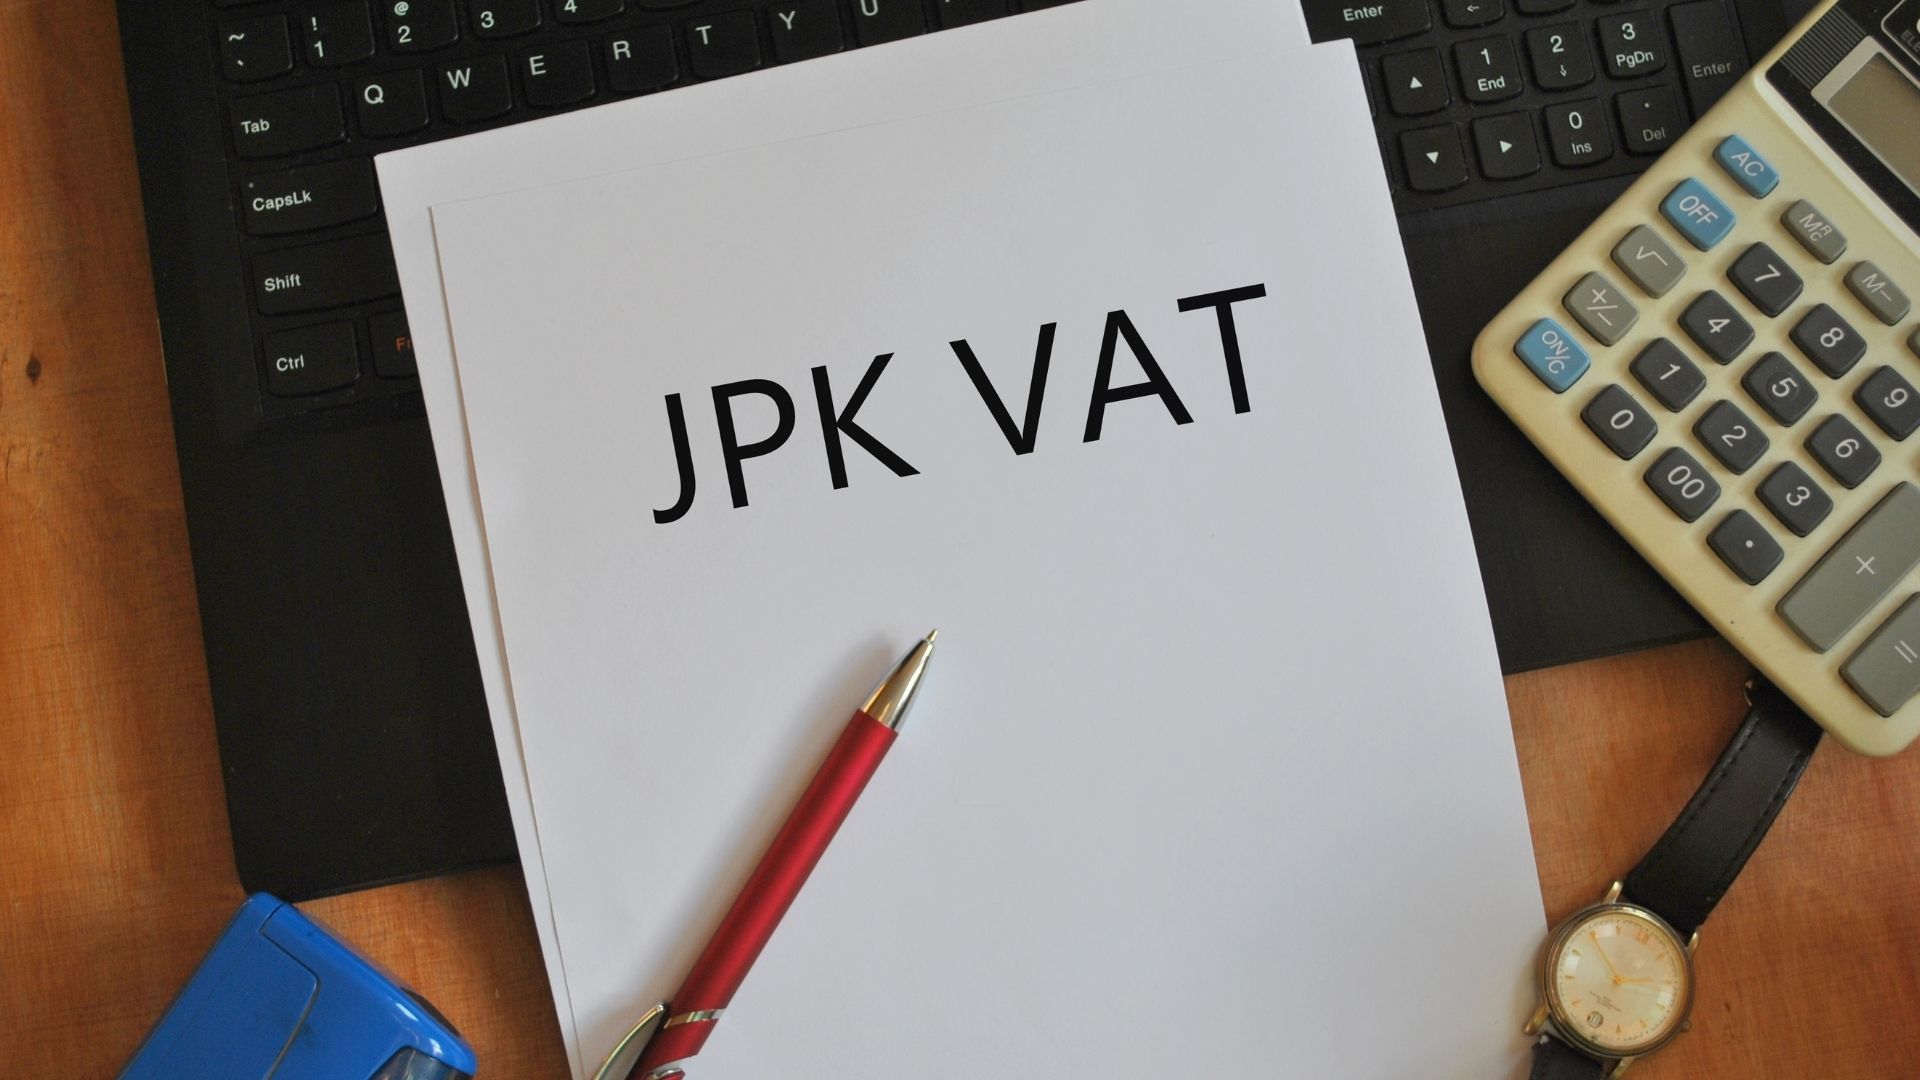 JPK_VAT